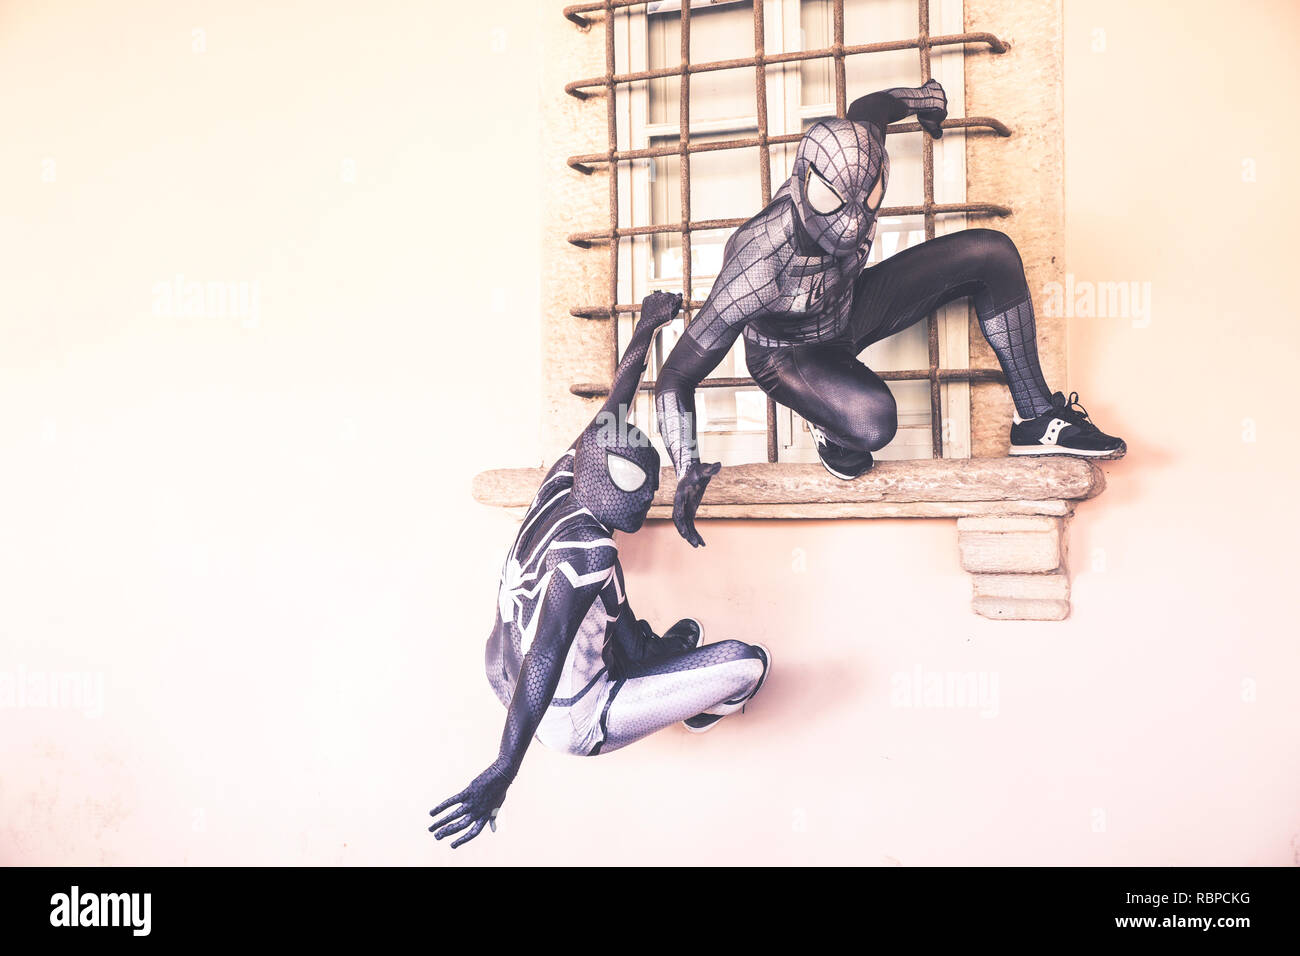 Lucca, Italia, 03/11/2018: due cosplayers dissimulata come Uomo Ragno effettuare arrampicate sulle pareti durante la festa di carnevale in Lucca Foto Stock